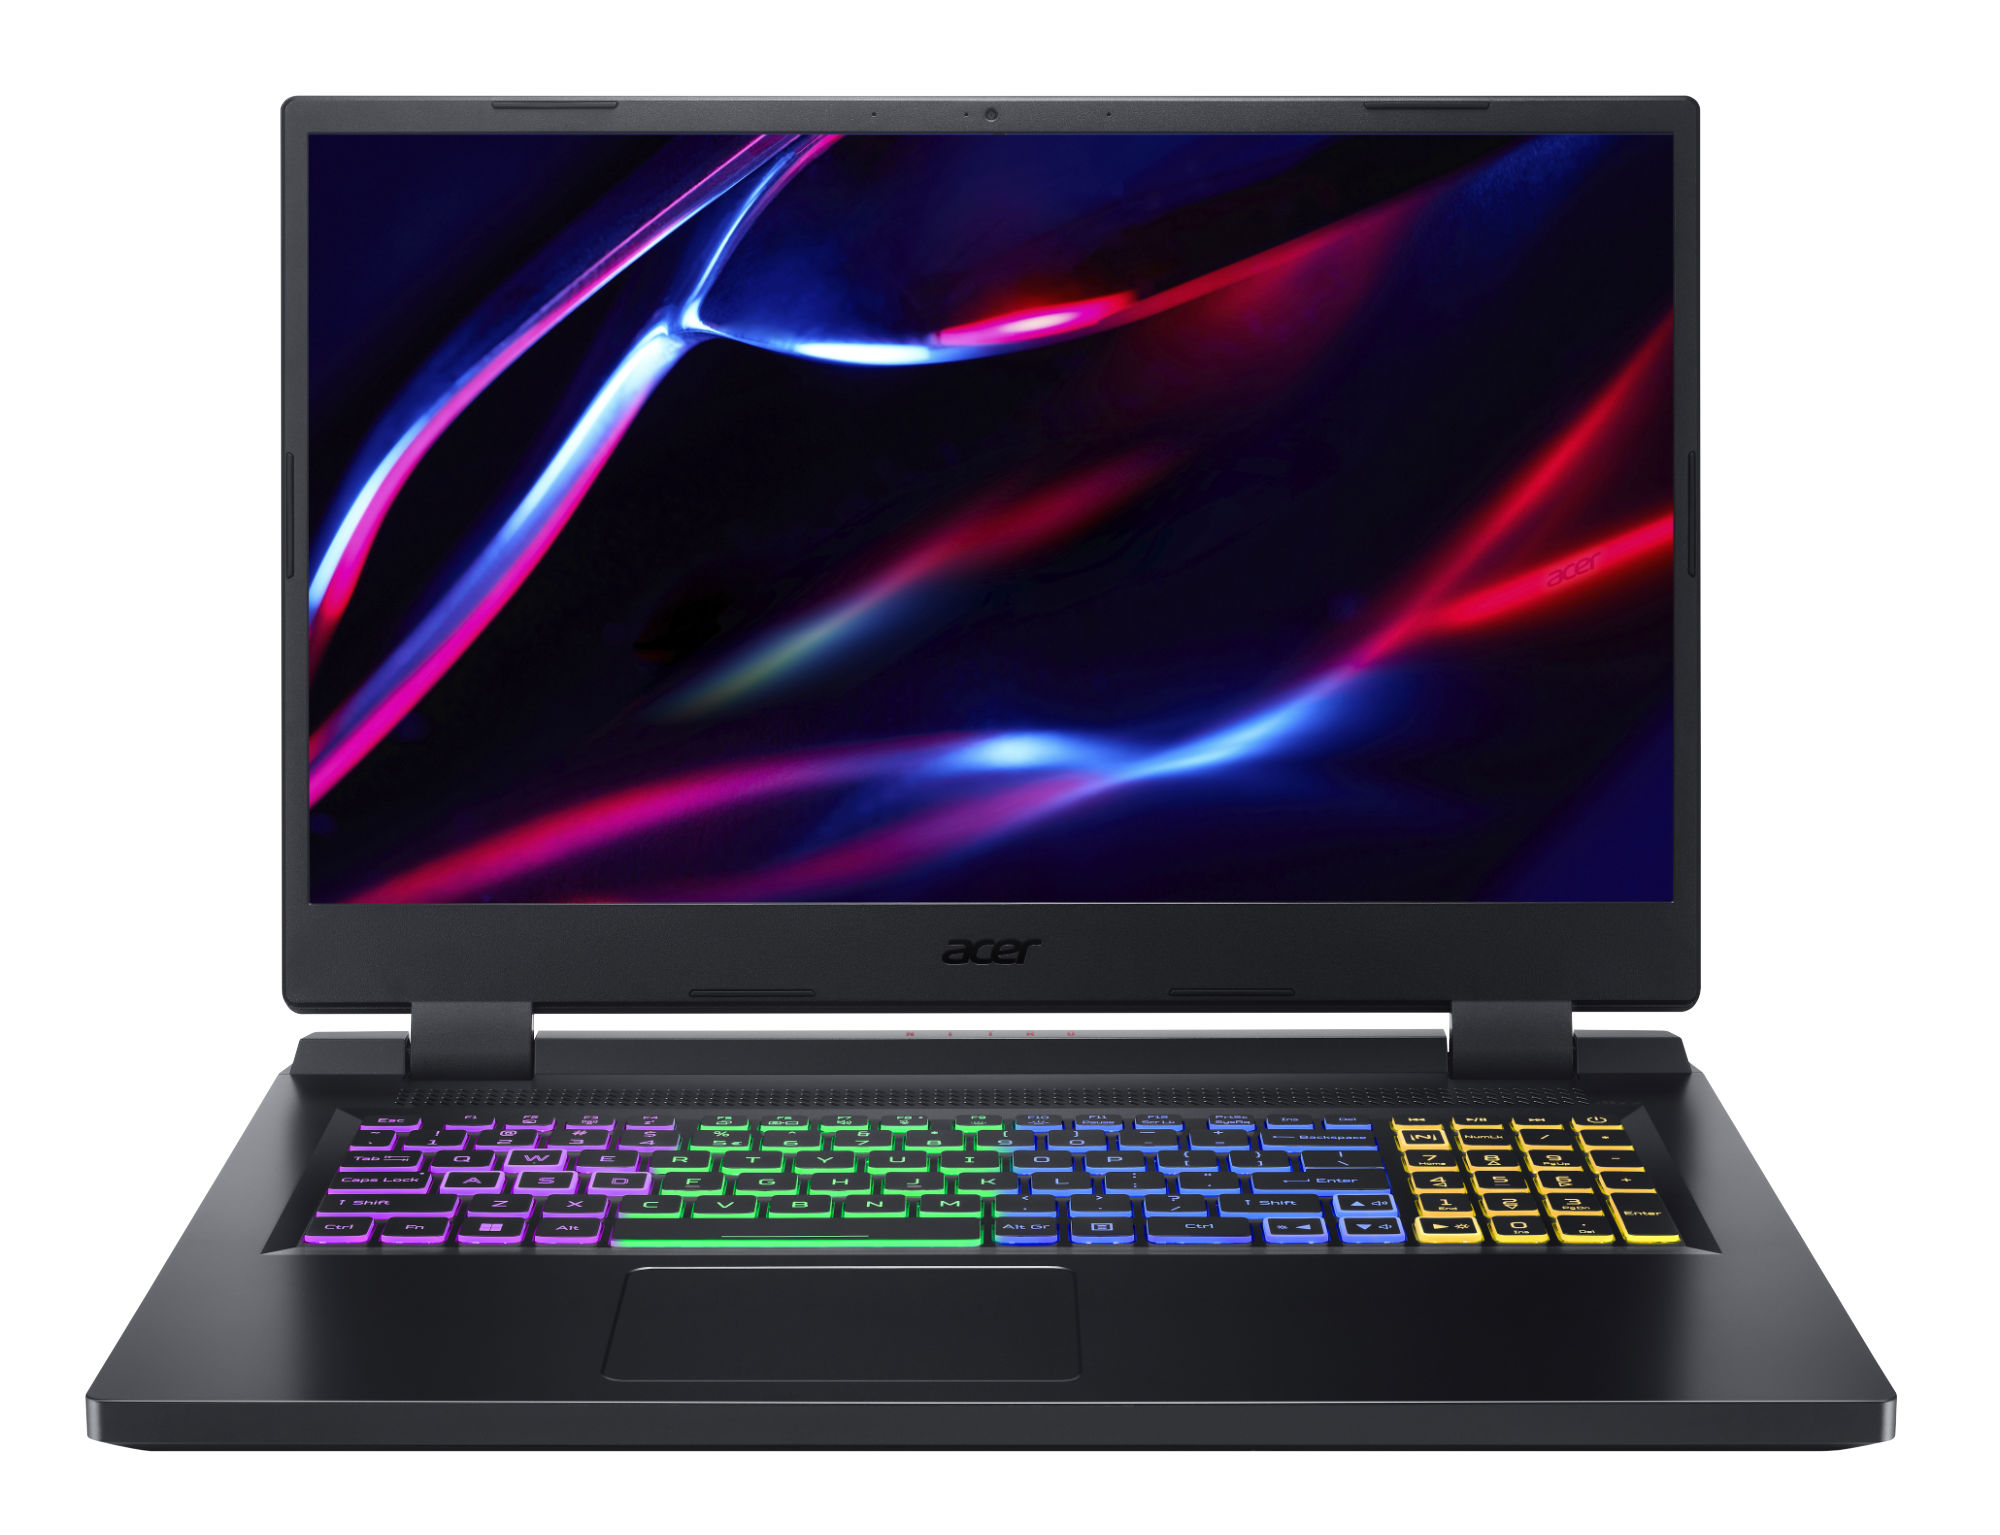 Acer PC portable MAGASIN EN LIGNE Grosbill